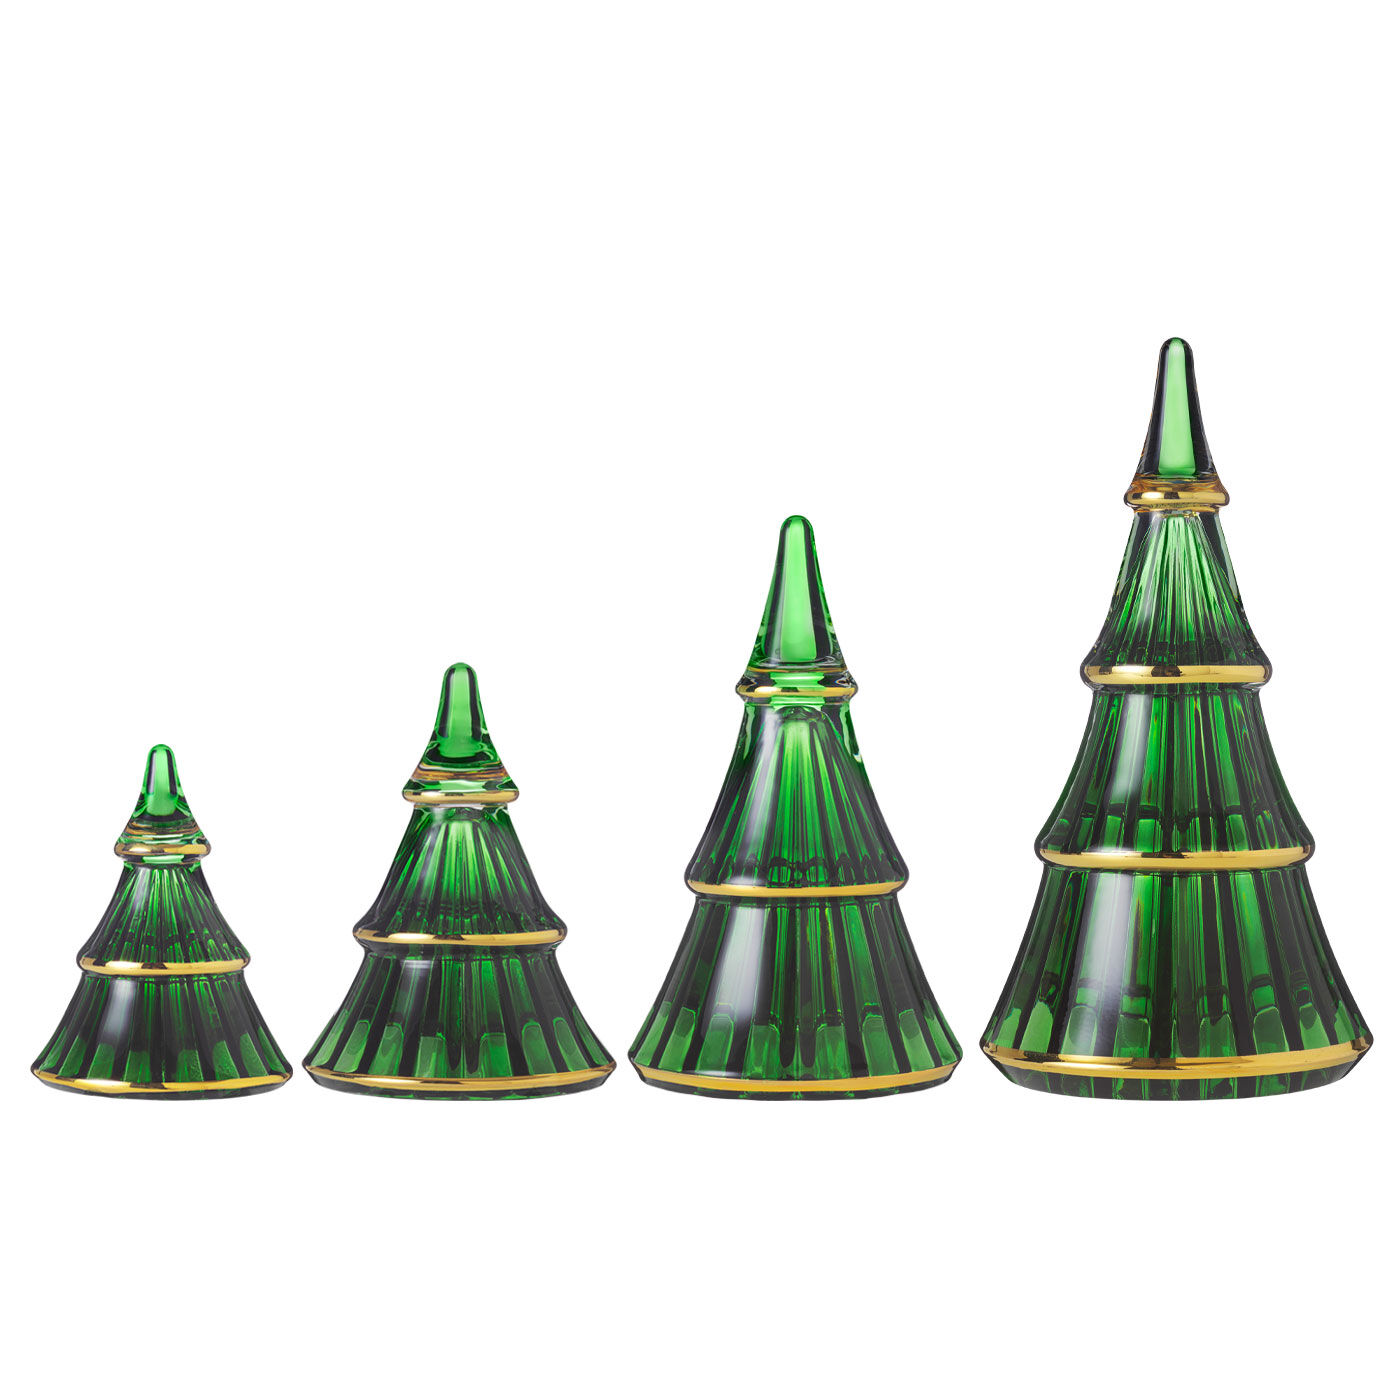 SeeMONO|ガラスのウェーブが美しい　一年中飾れるクリスマスツリー〈Ｍグリーン〉／ホルムガード|左から2番目がMサイズです。